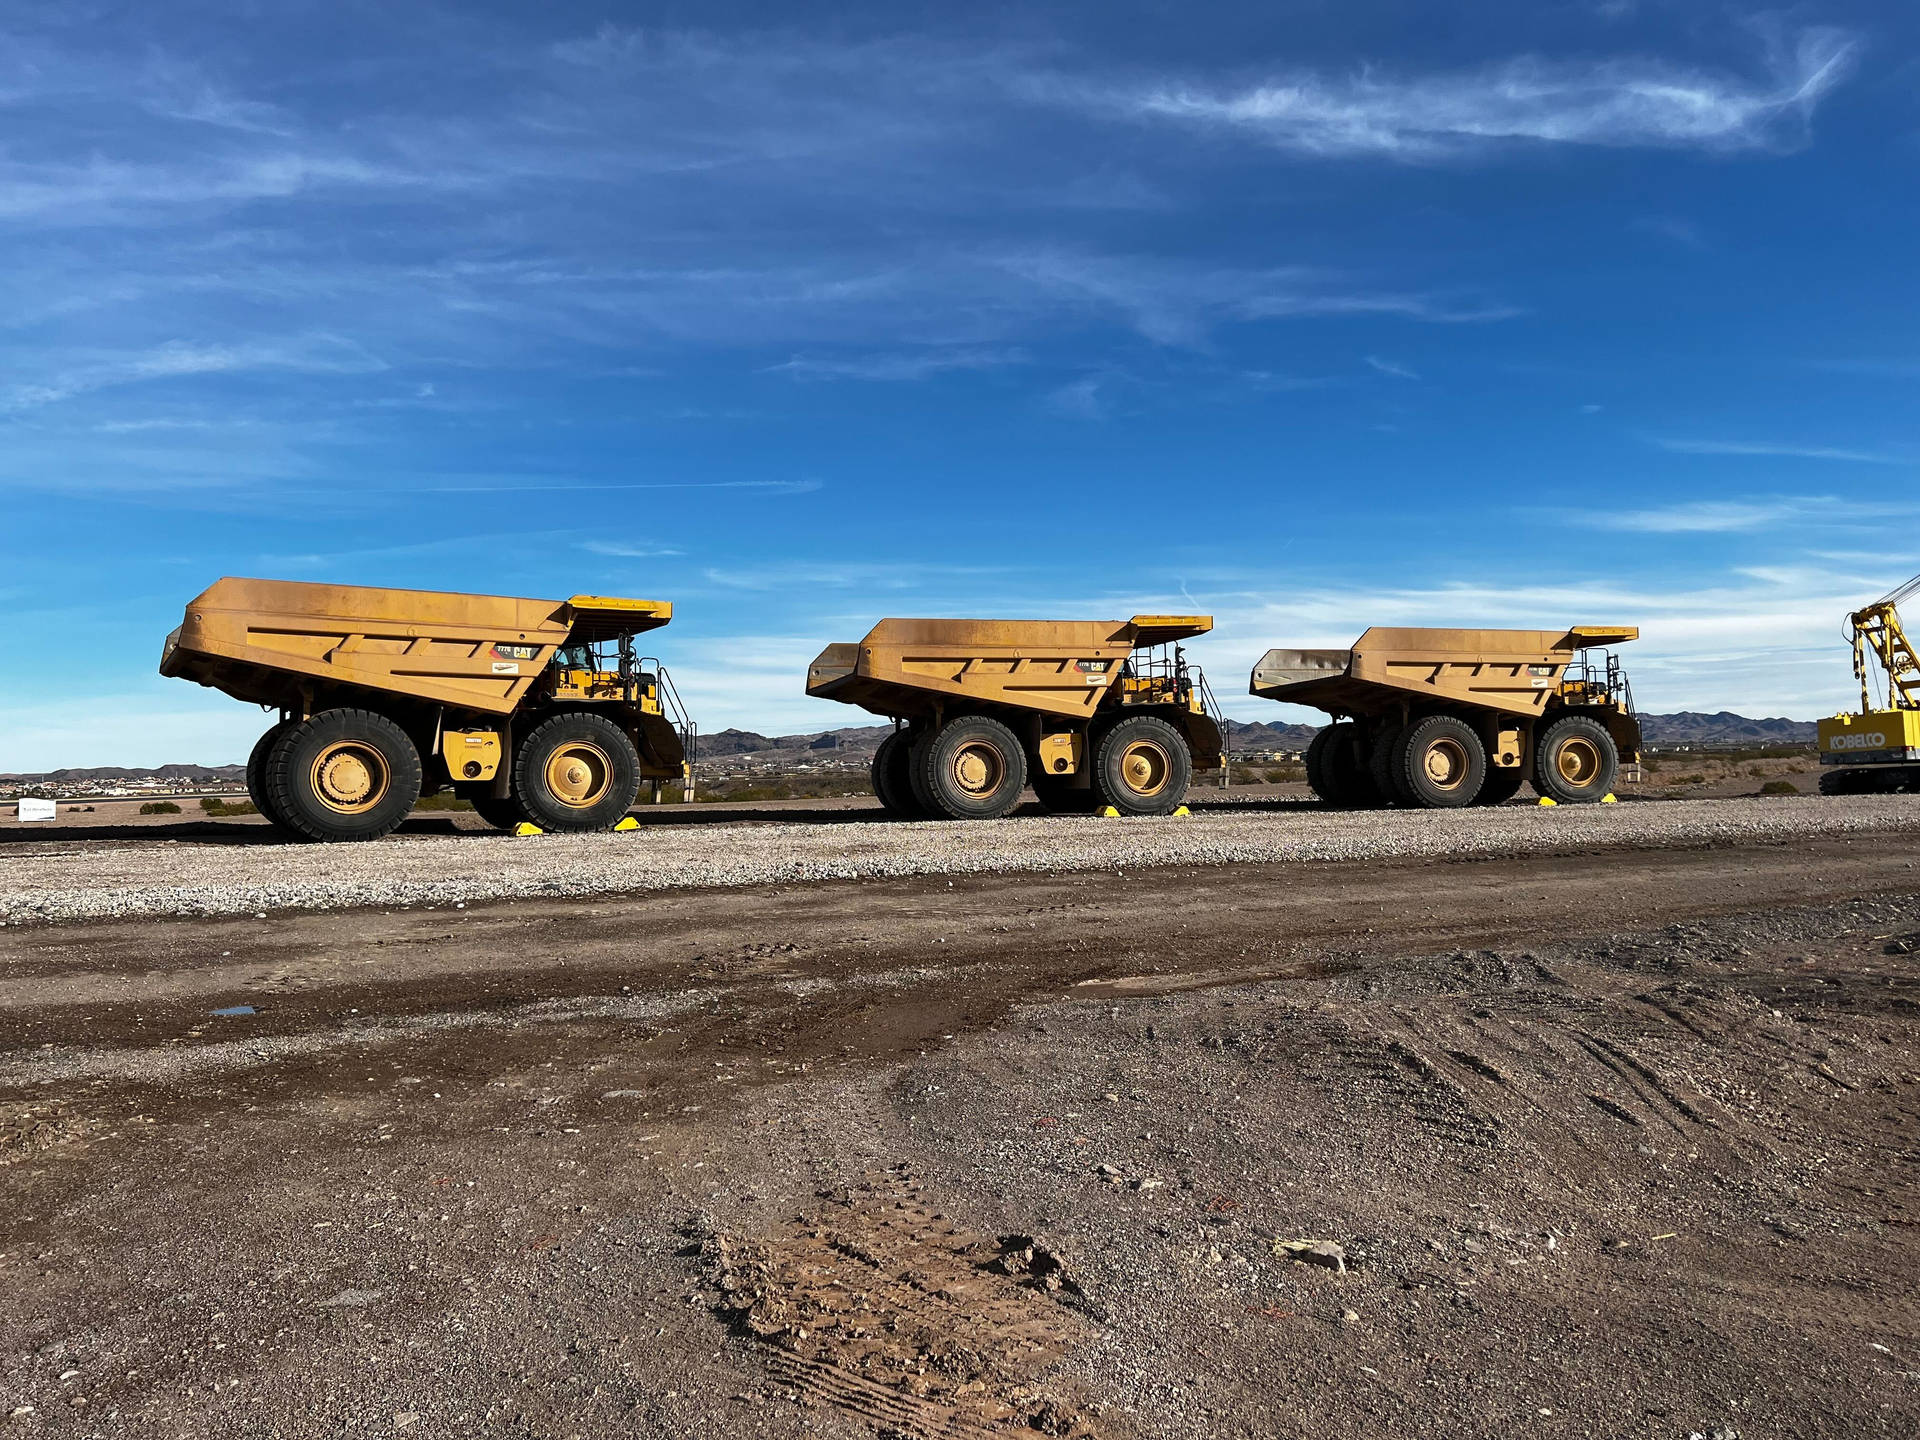 Mining Dump Trucks